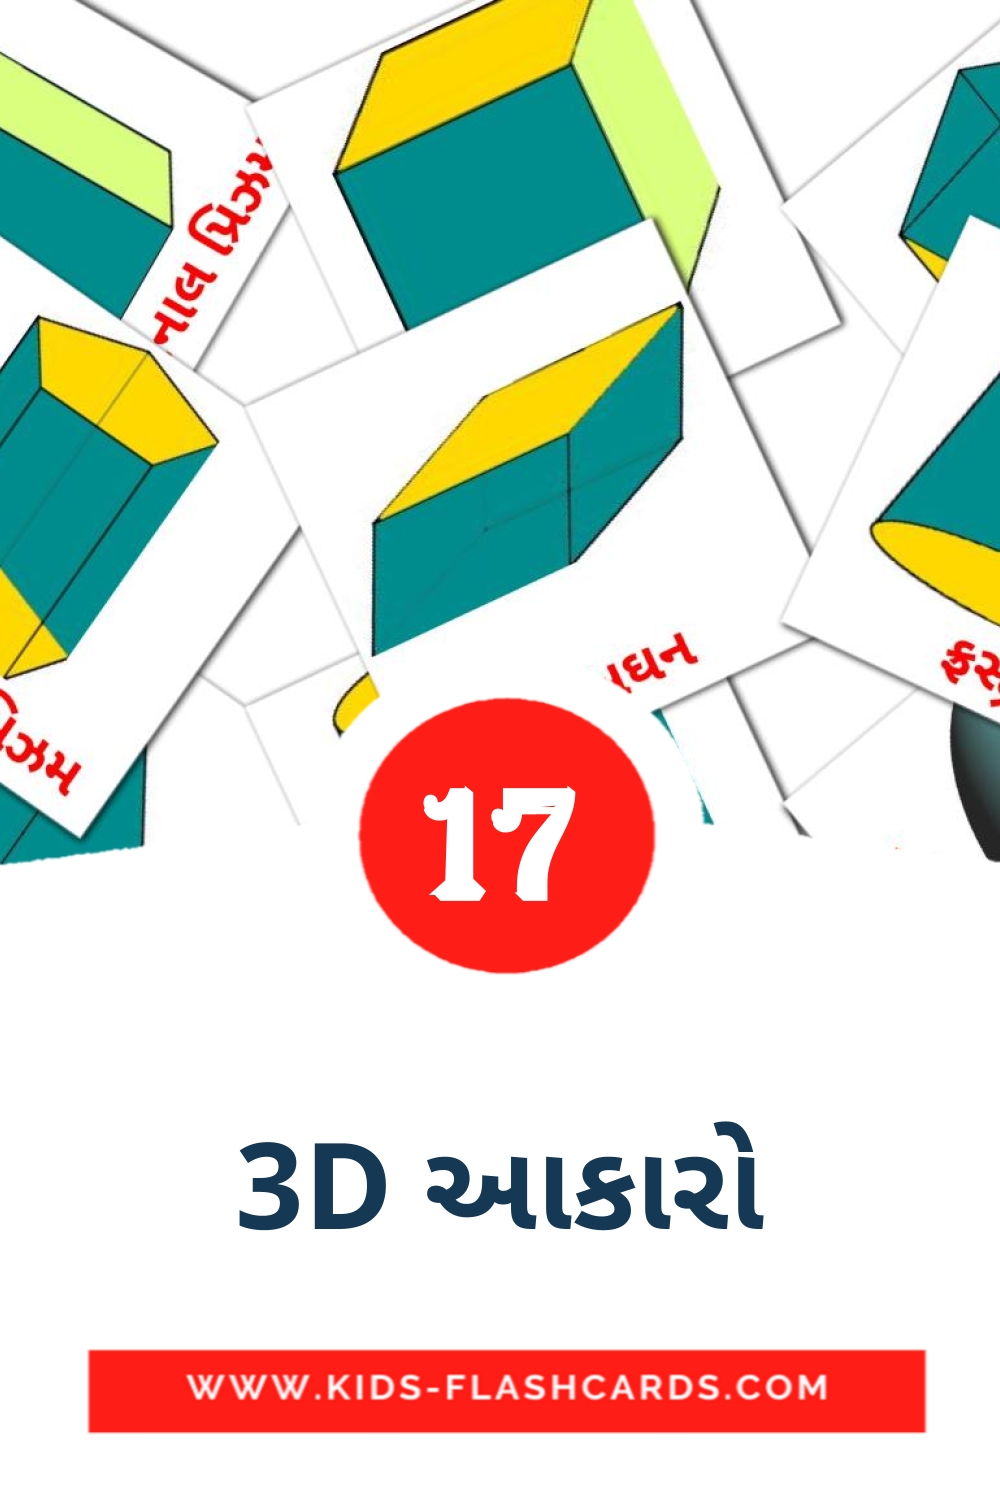 17 carte illustrate di 3D આકારો per la scuola materna in gujarati